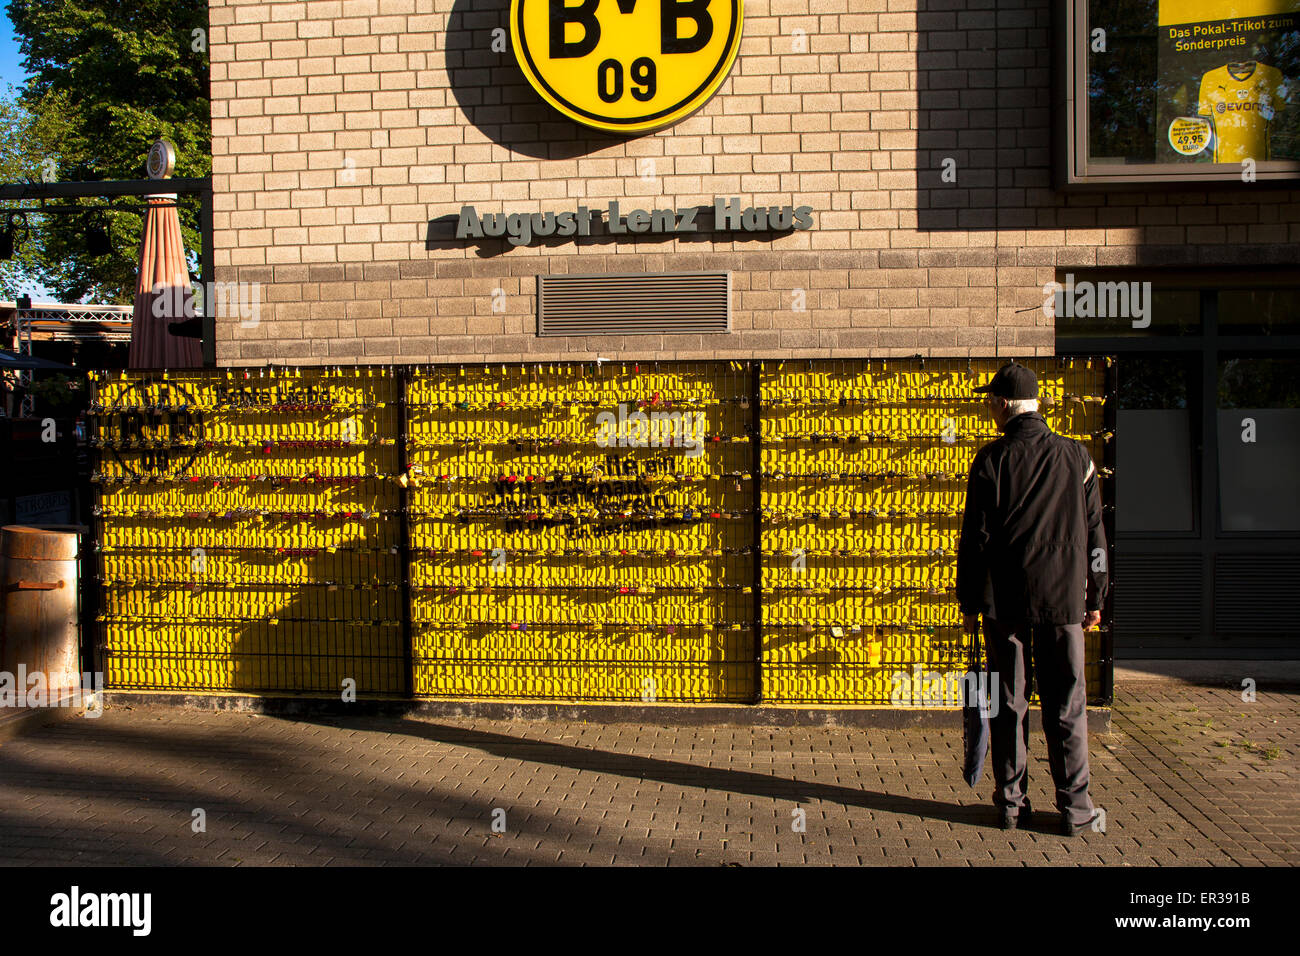 Europa, Deutschland, Ruhr, Dortmund, parc Signal Iduna, die sogenannte 'Wand der Liebe' suis Août Lenz Haus am Stadion, BV Banque D'Images